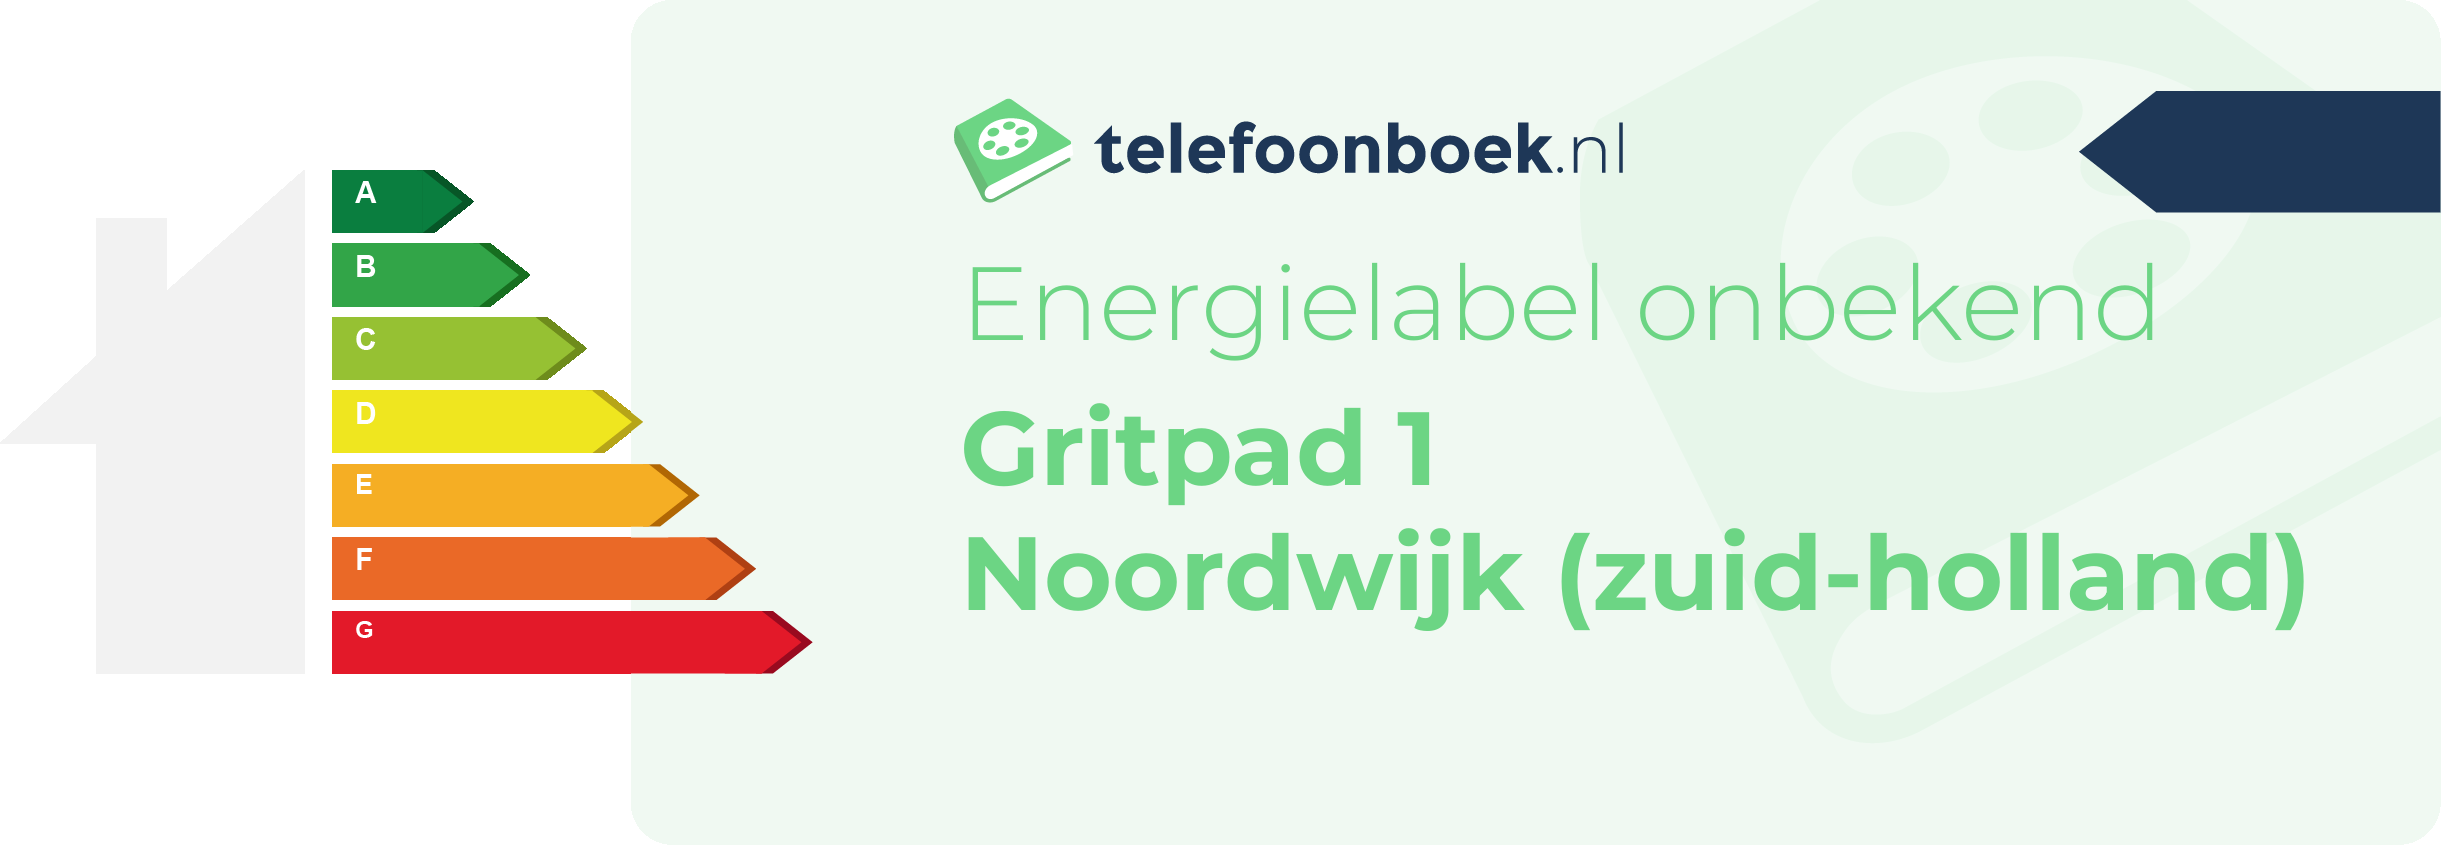 Energielabel Gritpad 1 Noordwijk (Zuid-Holland)